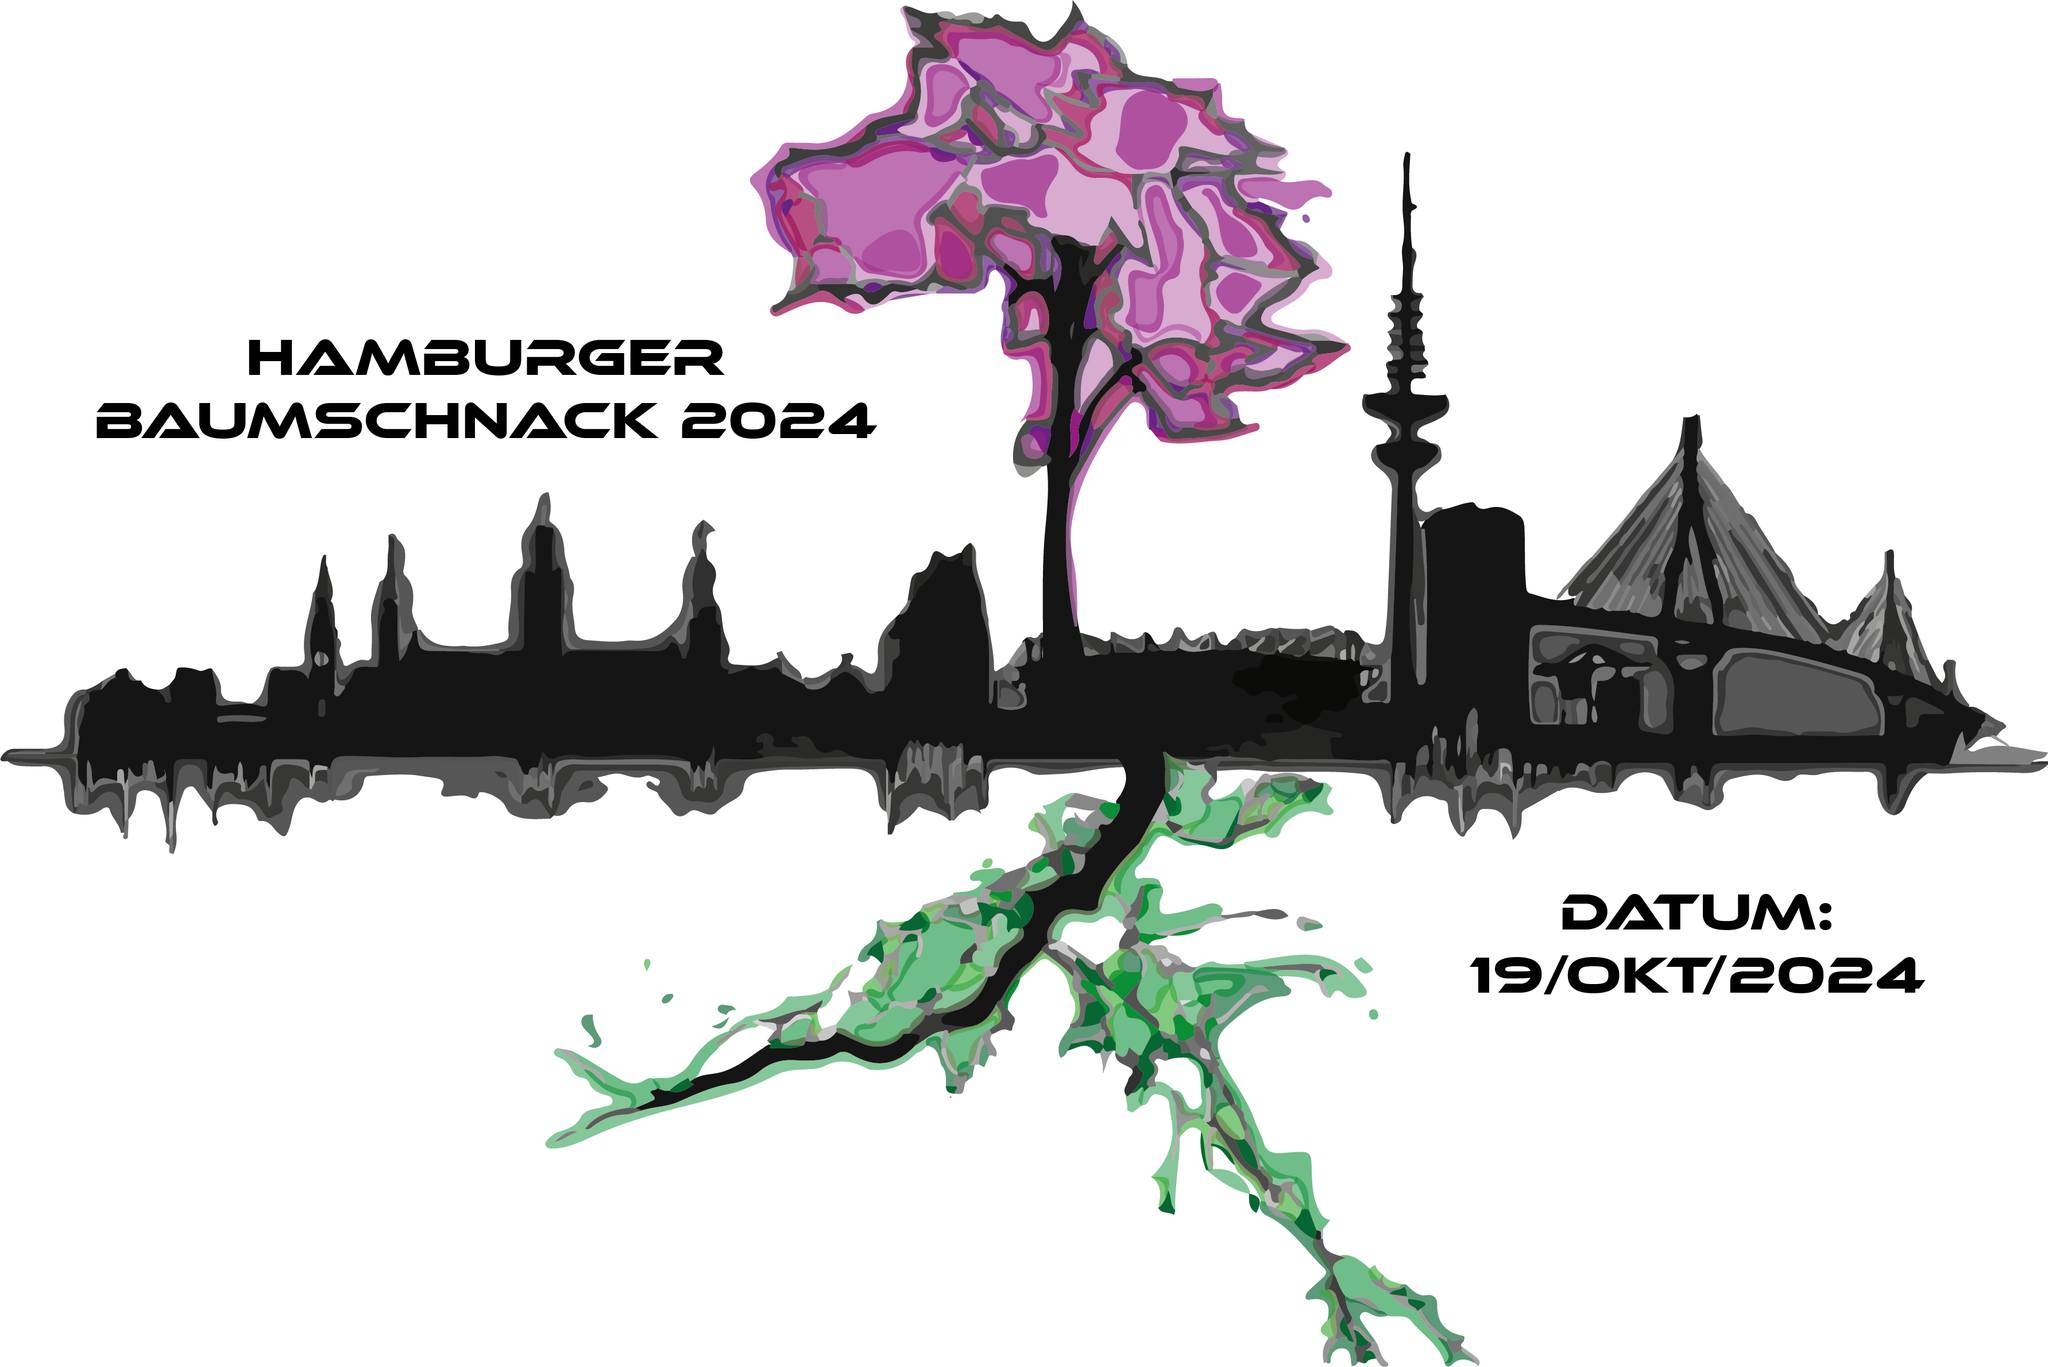 Baumschnack 2024